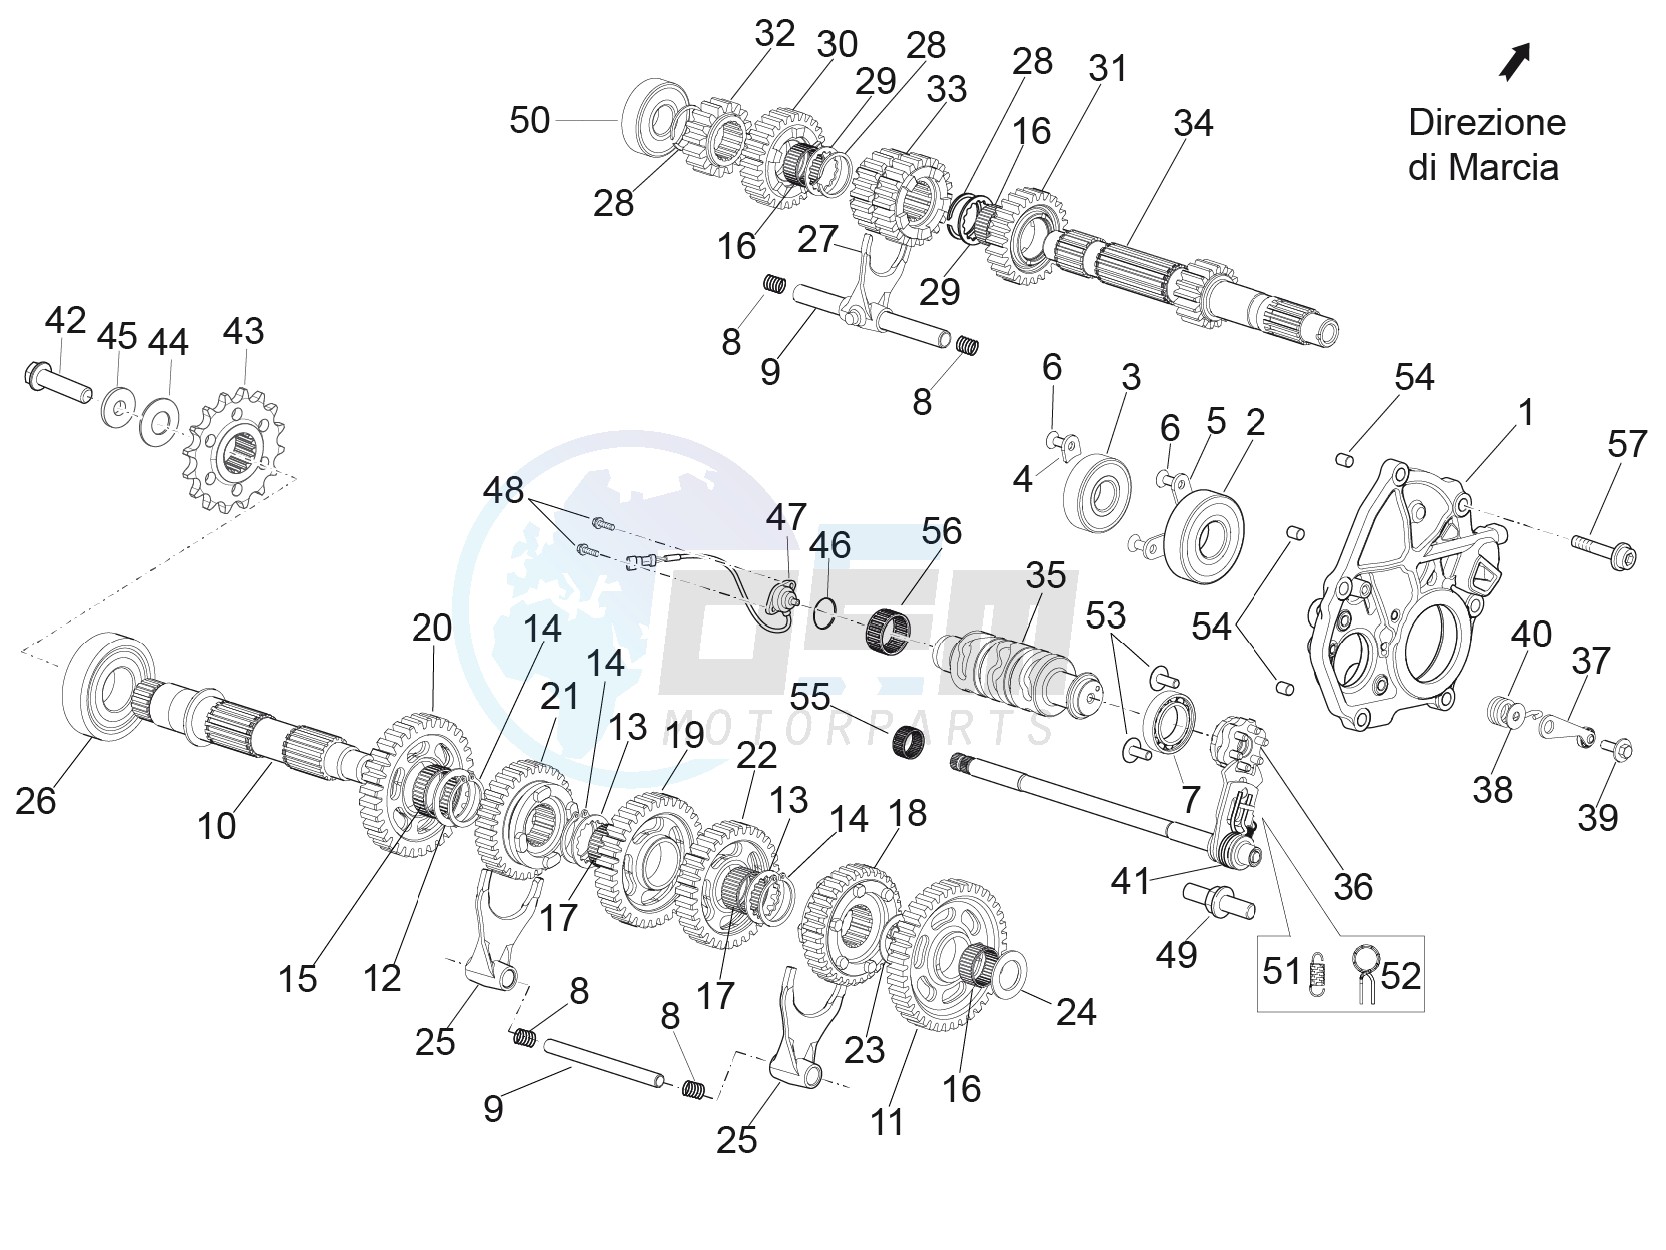 Gear box - Gear assembly blueprint